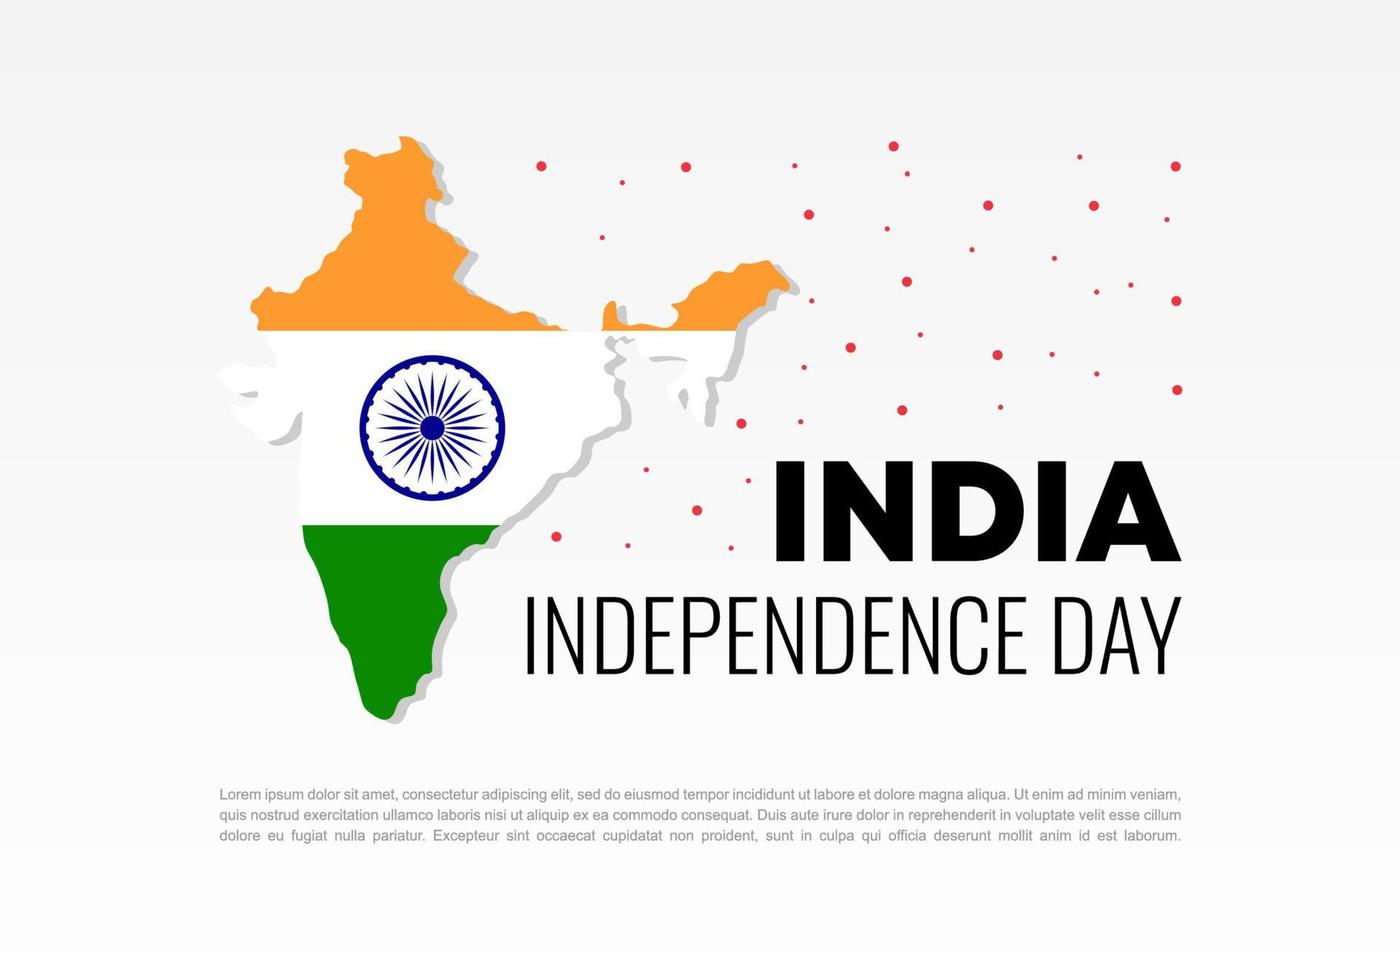 célébration nationale de la fête de l'indépendance de l'inde le 15 août. vecteur